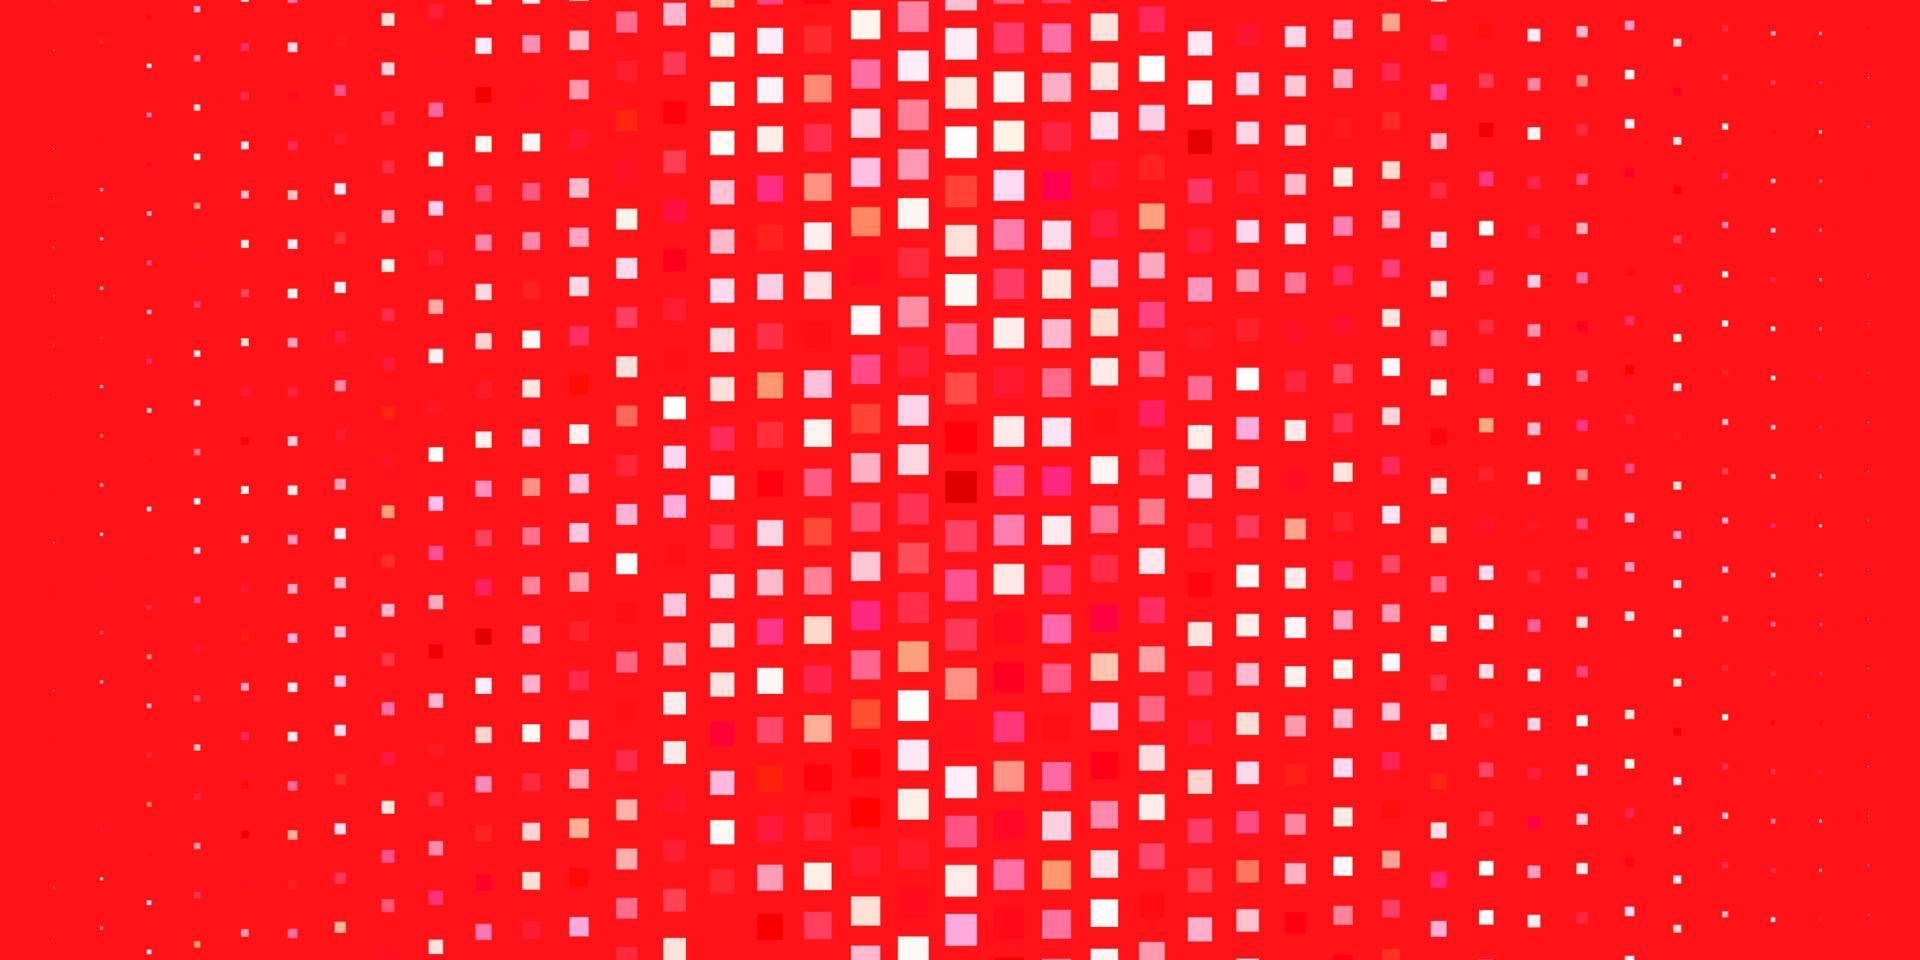 telón de fondo de vector rojo claro con rectángulos.